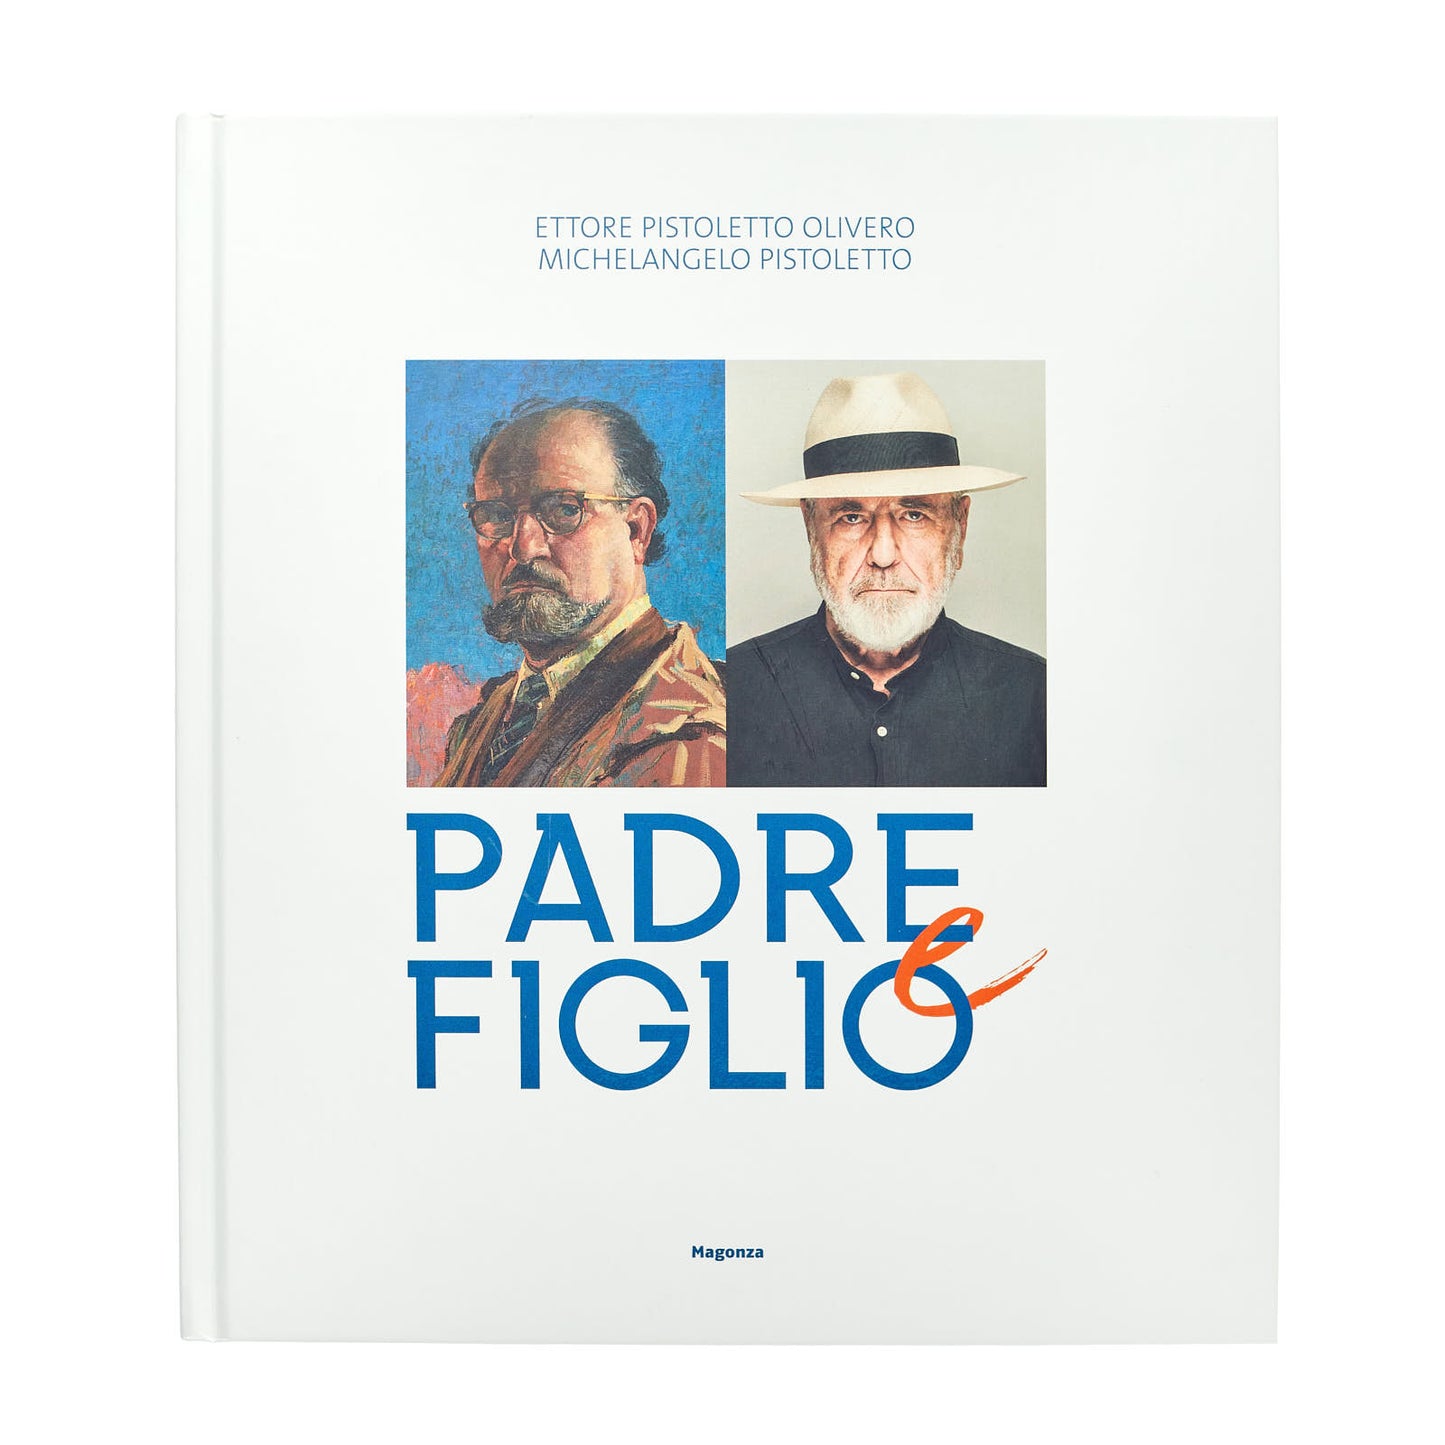 Ettore Pistoletto Olivero. Michelangelo Pistoletto. Padre e Figlio (exhibition catalogue English ed.)